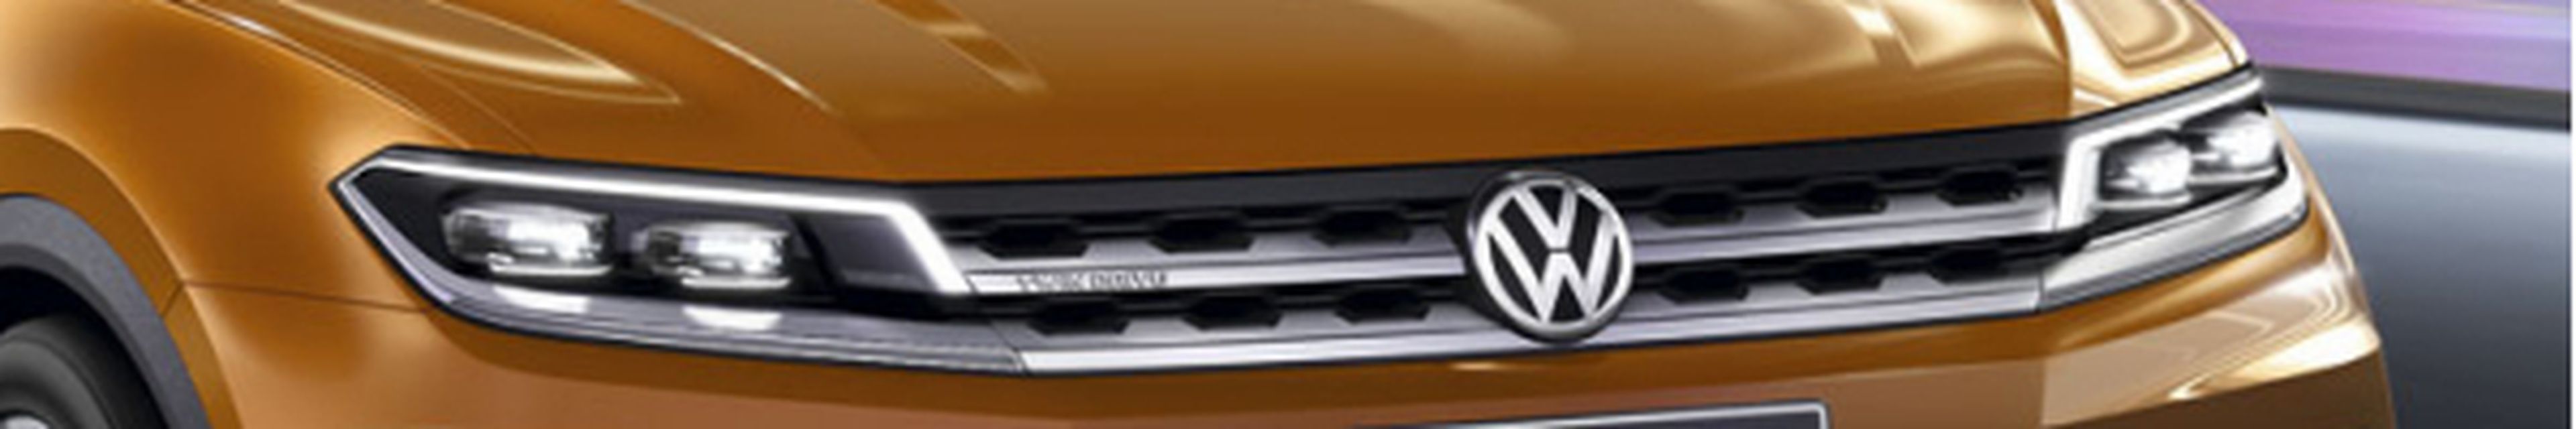 Volkswagen Concept